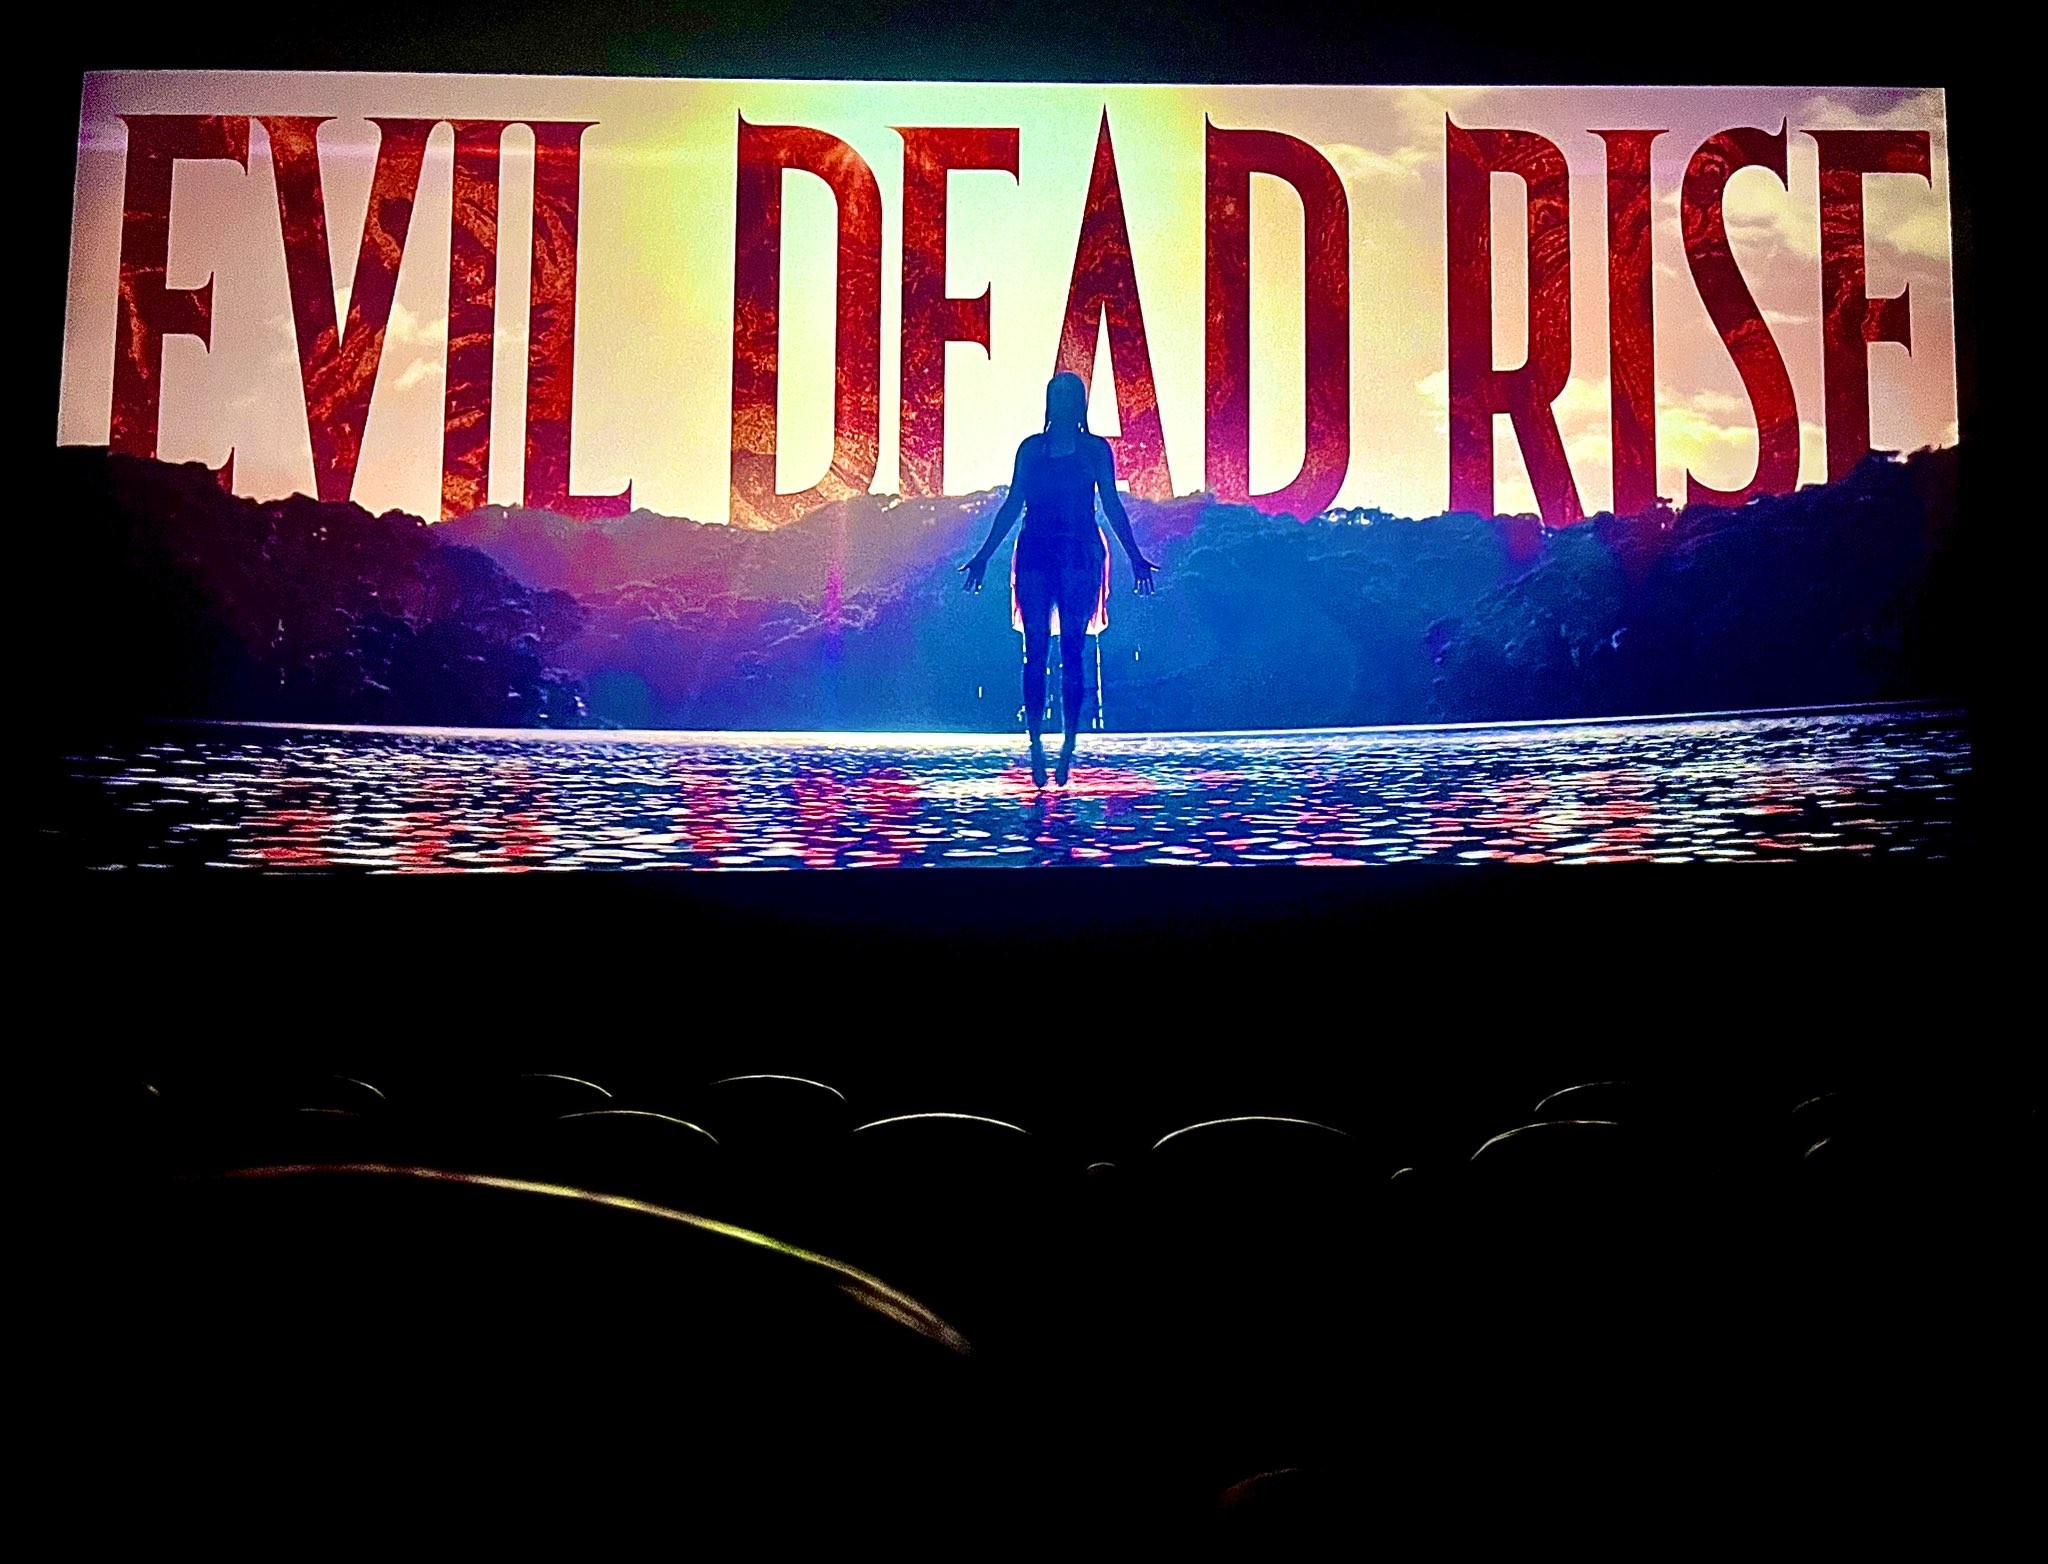 لينك مشاهدة فيلم صعود الشر المميت Evil Dead Rise مترجم الآن وكامل 2023